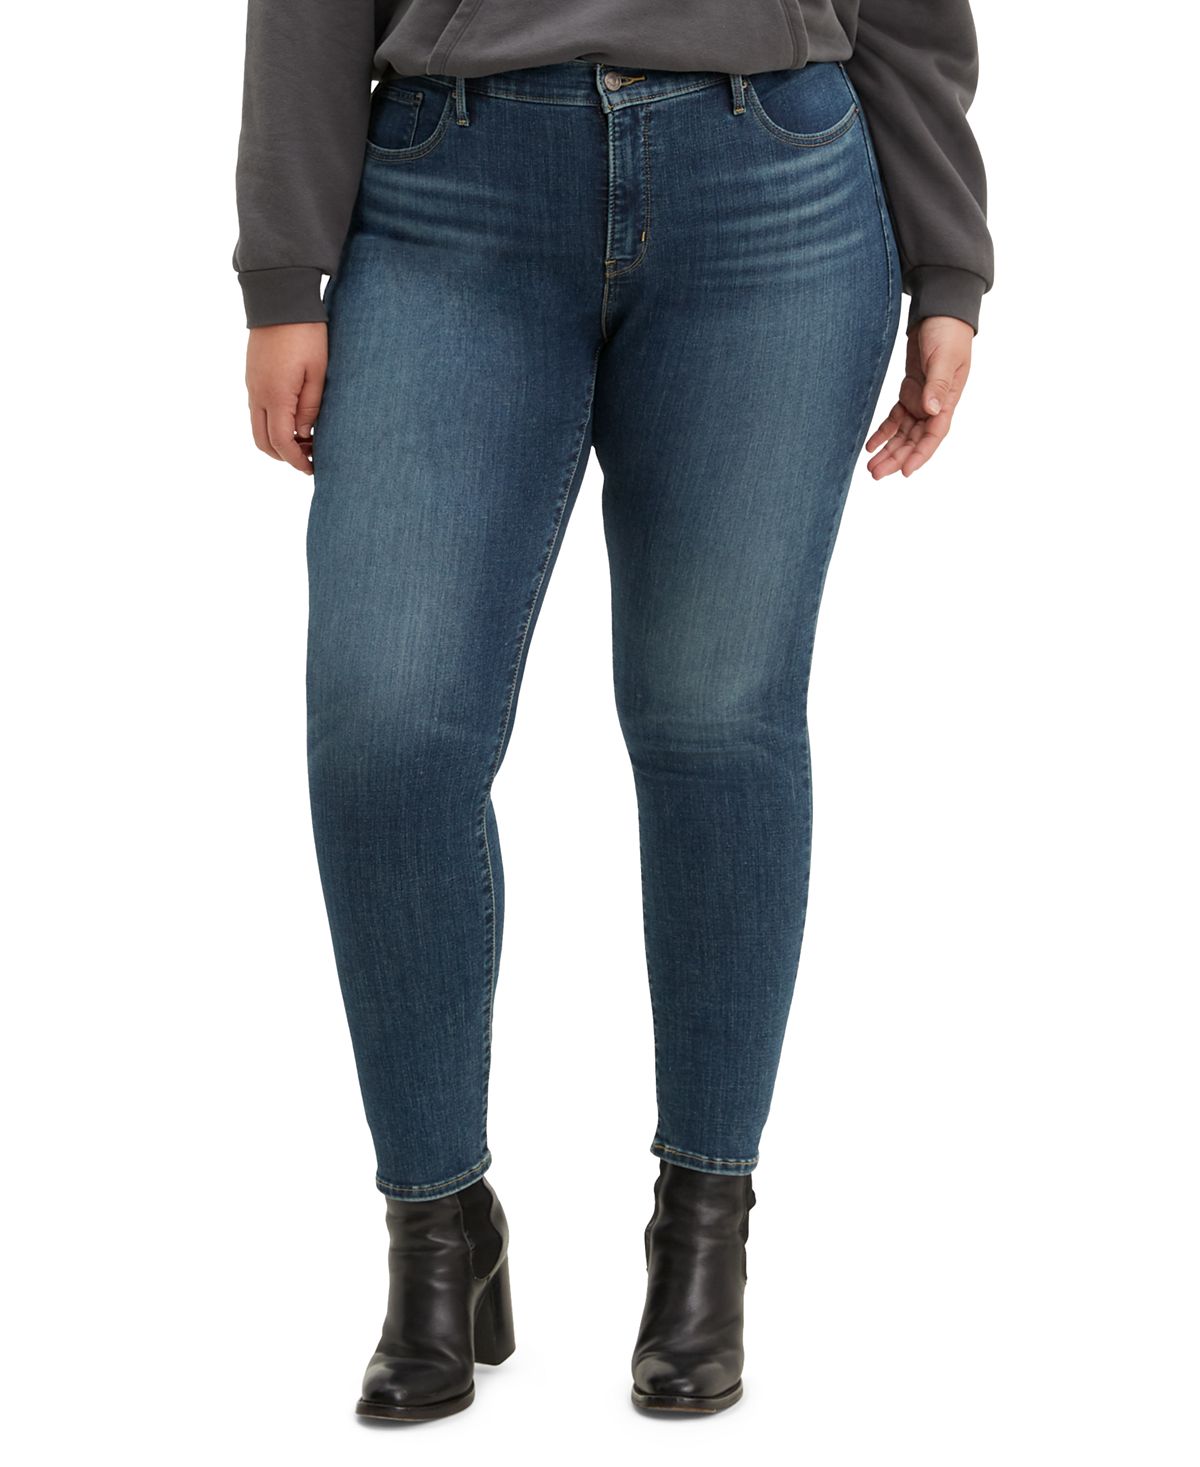 Модные моделирующие джинсы скинни размера 311 большого размера Levi's